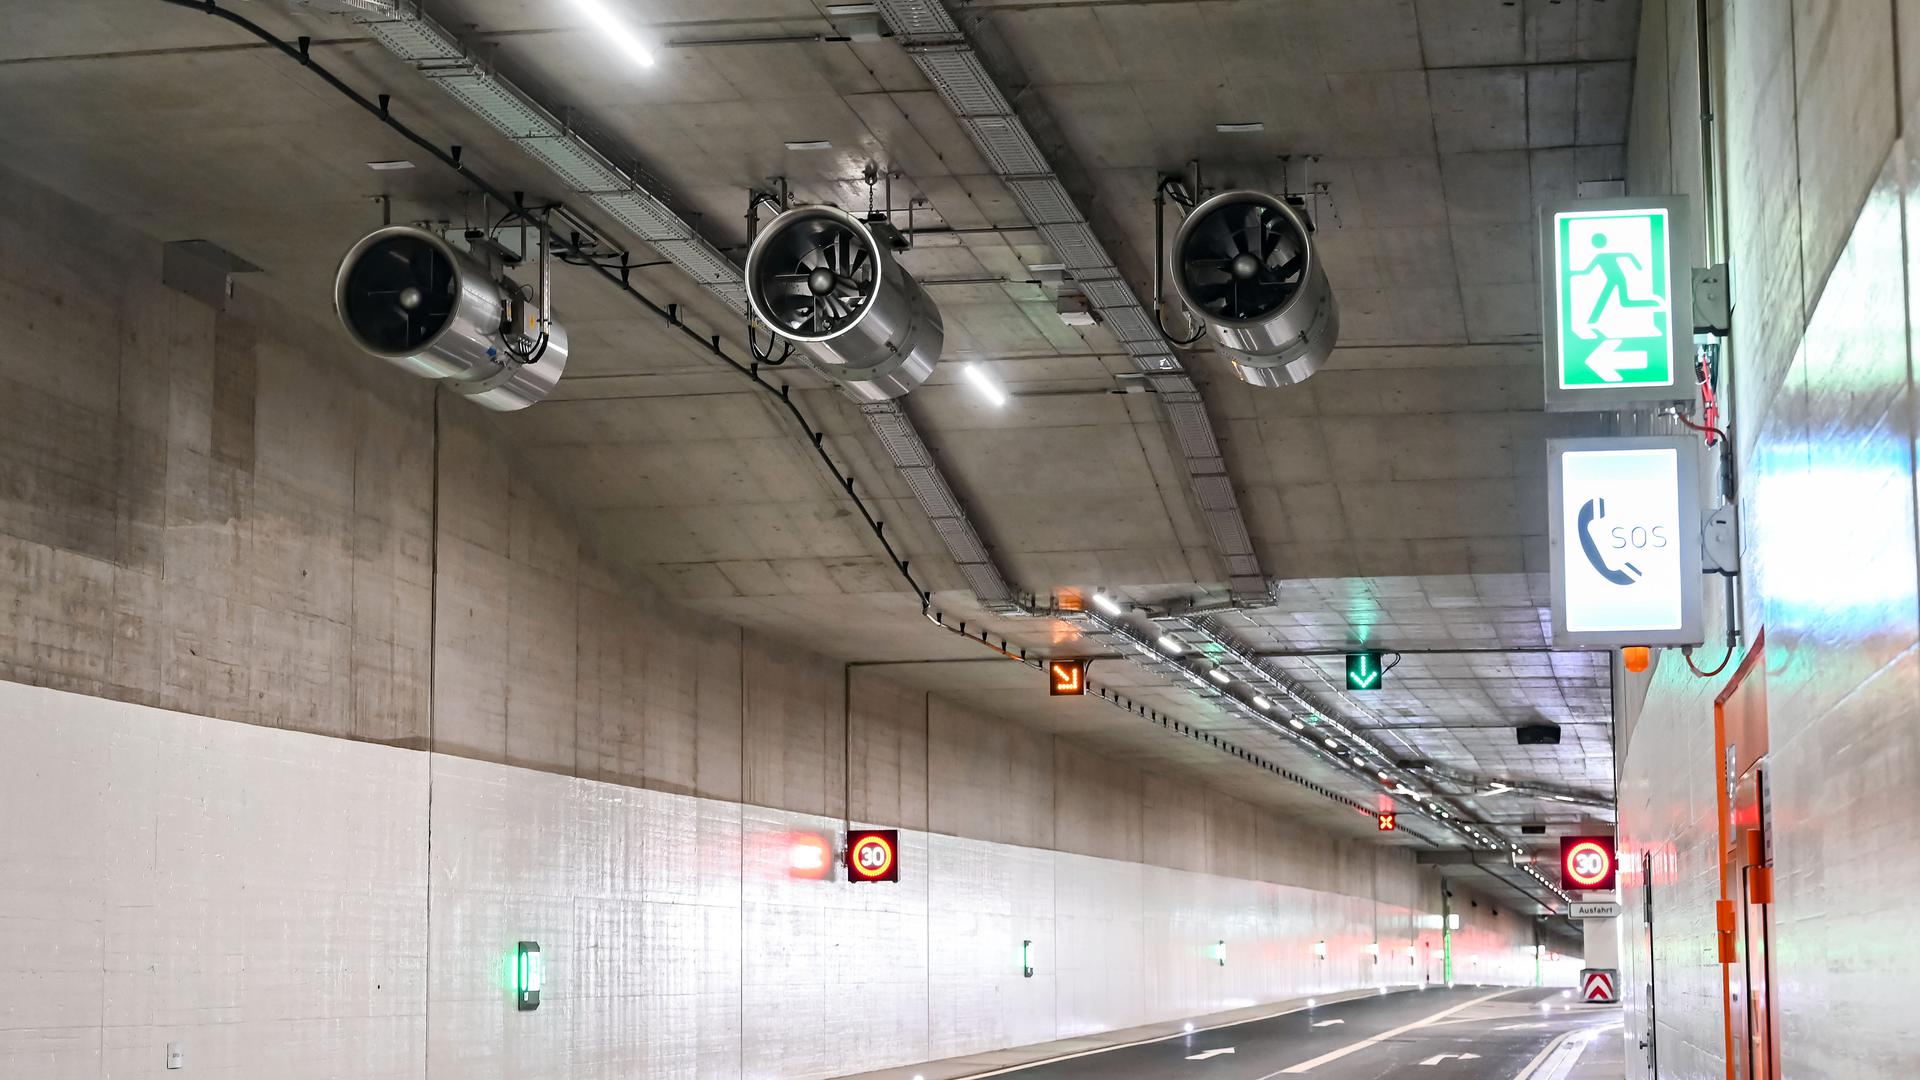 Innenaufnahme des gesperrten Karlsruher Autotunnels. Nach gravierenden Defekten bei der Lüfteranlage verzögert sich die Eröffnung des Tunnels um Monate. Wie aus Informationen der Karlsruher Schieneninfrastruktur-Gesellschaft (KASIG) an die Aufsichtsratsmitglieder hervorgeht, gab es an zwei Ventilatoren, die unter der Tunneldecke angebracht sind, nicht vorhersehbare technische Defekte. +++ dpa-Bildfunk +++